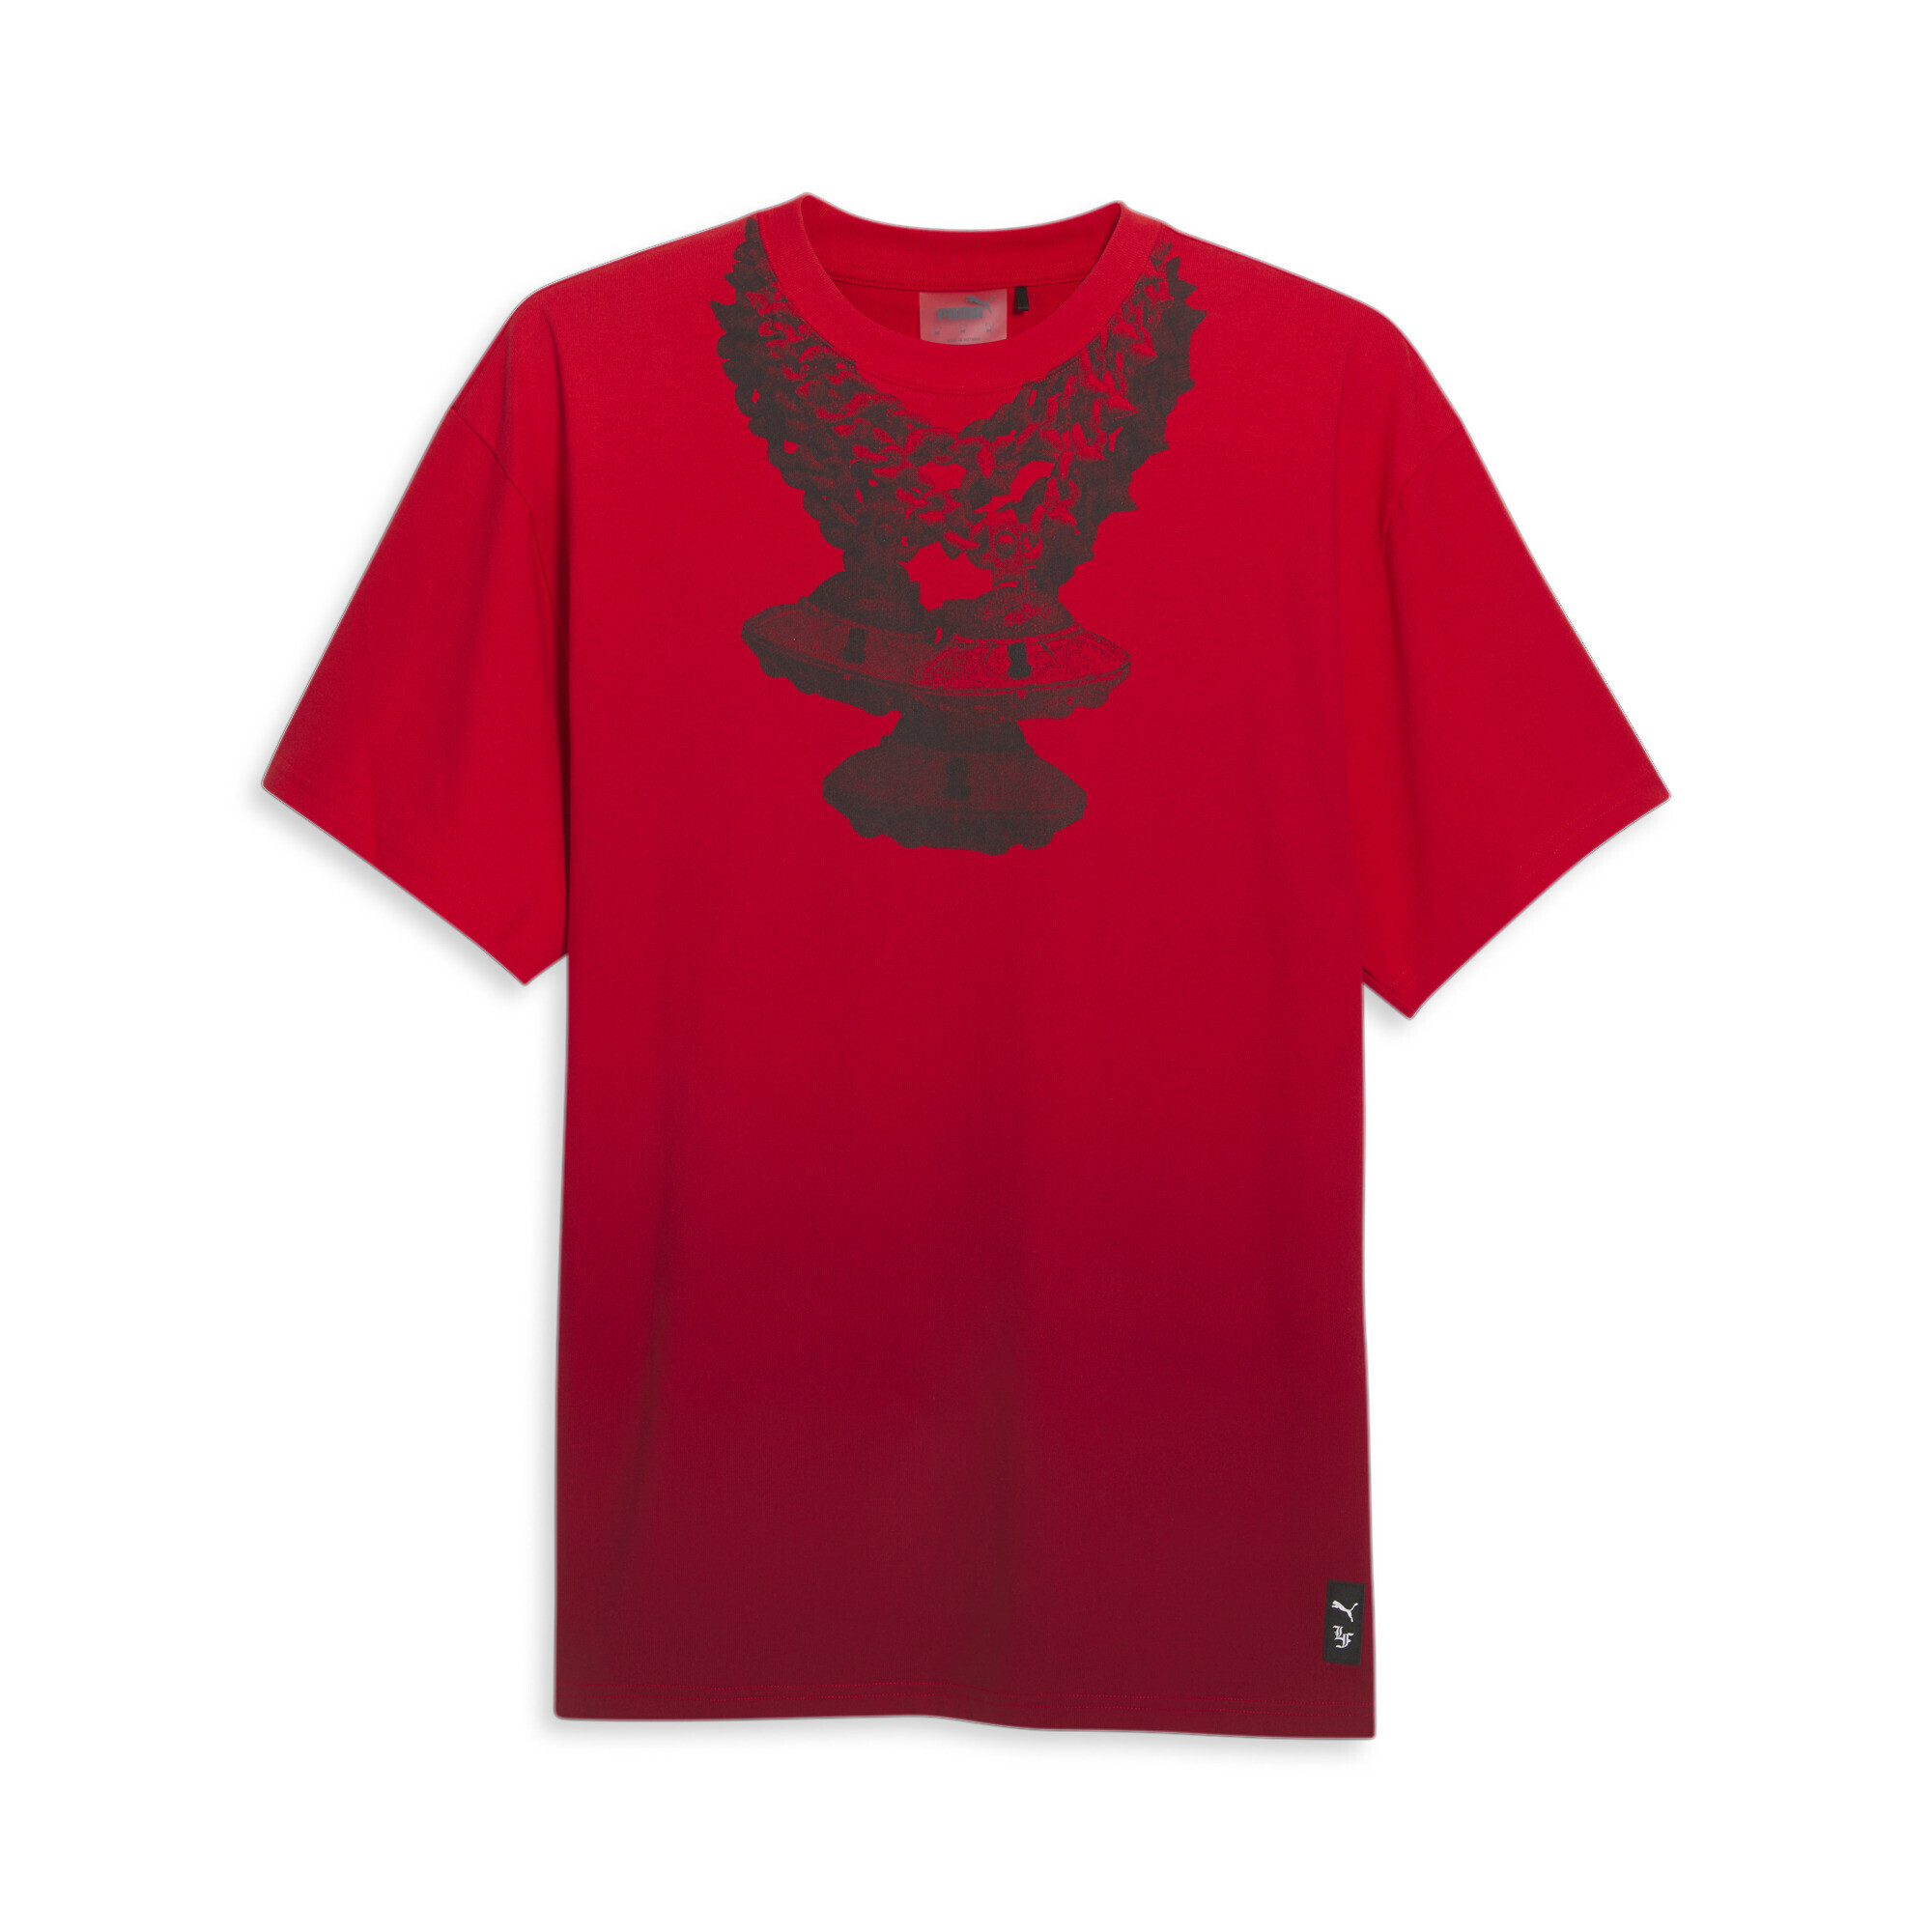 Men's PUMA X LAFRANCÃ T-Shirt In Red, Size 3XL